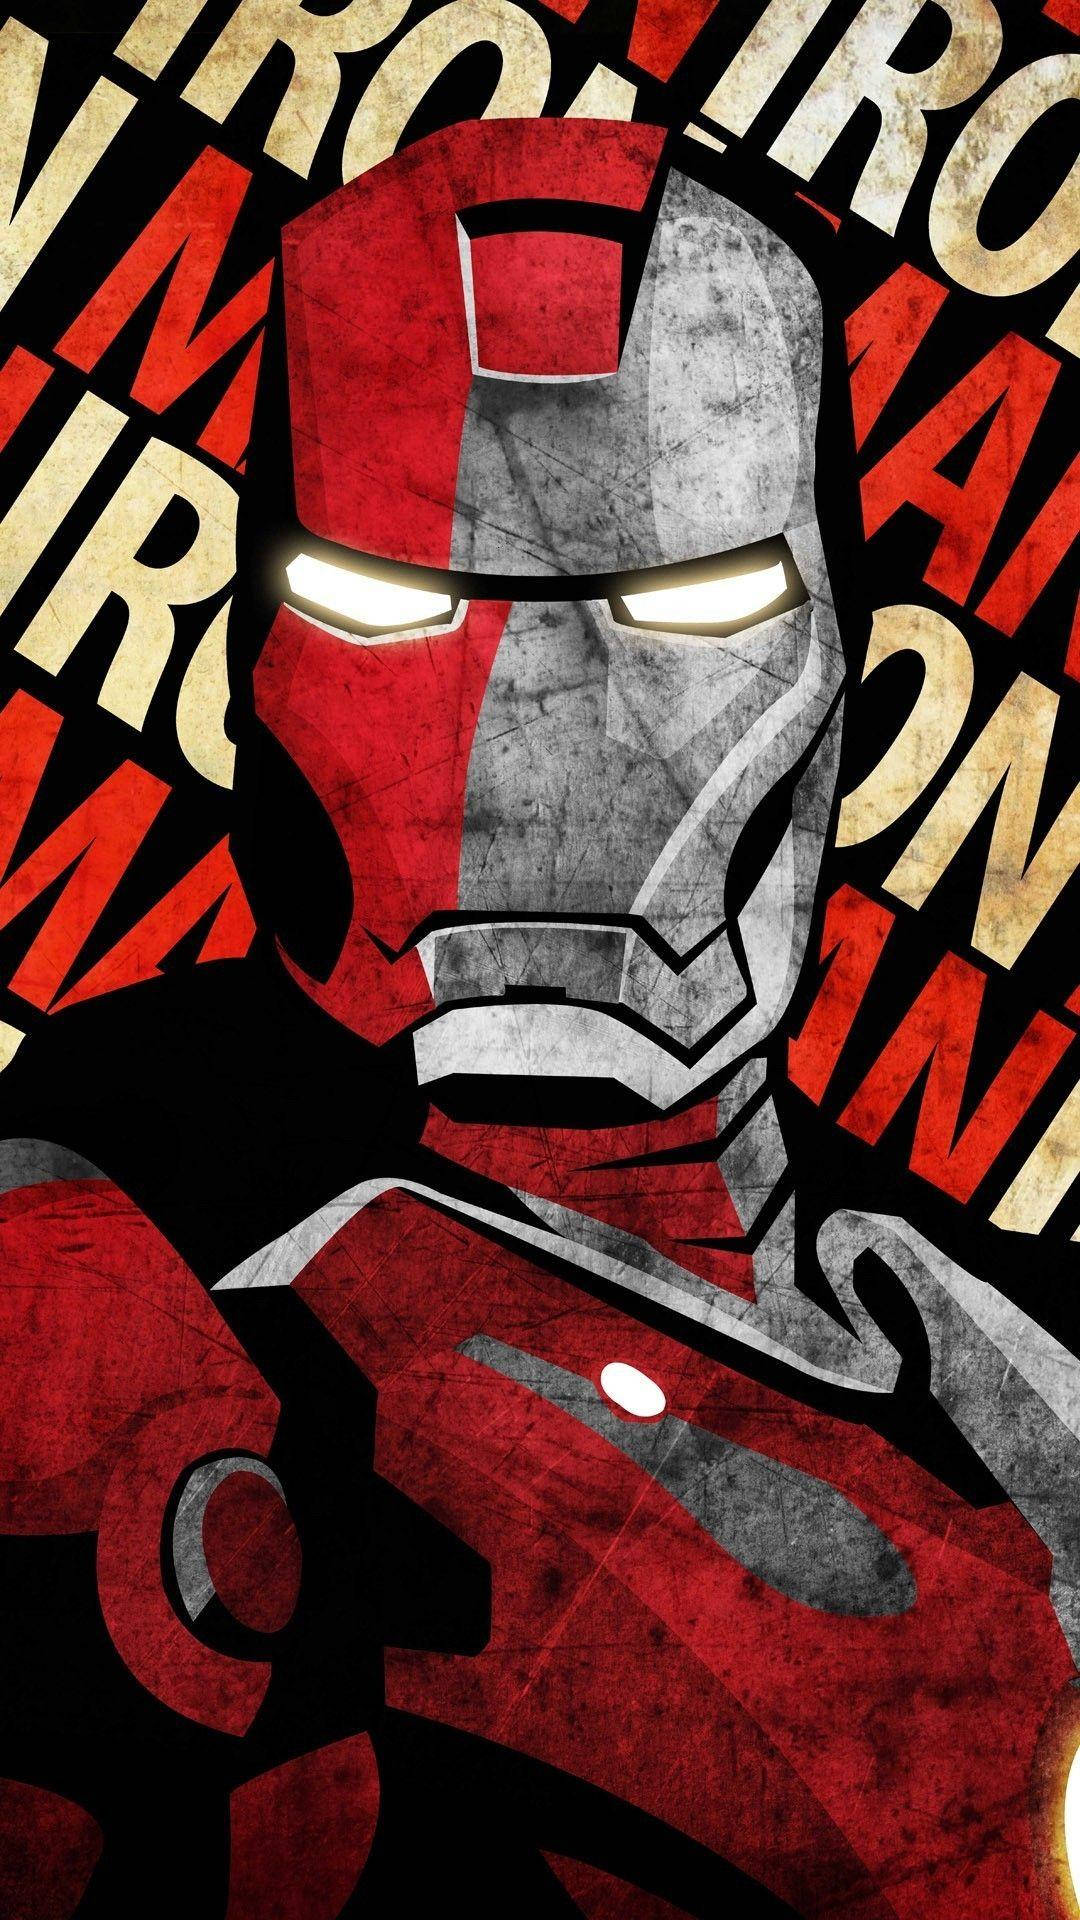 Free Iron Man Iphone Wallpaper Downloads, [100+] Iron Man Iphone Wallpapers  for FREE 